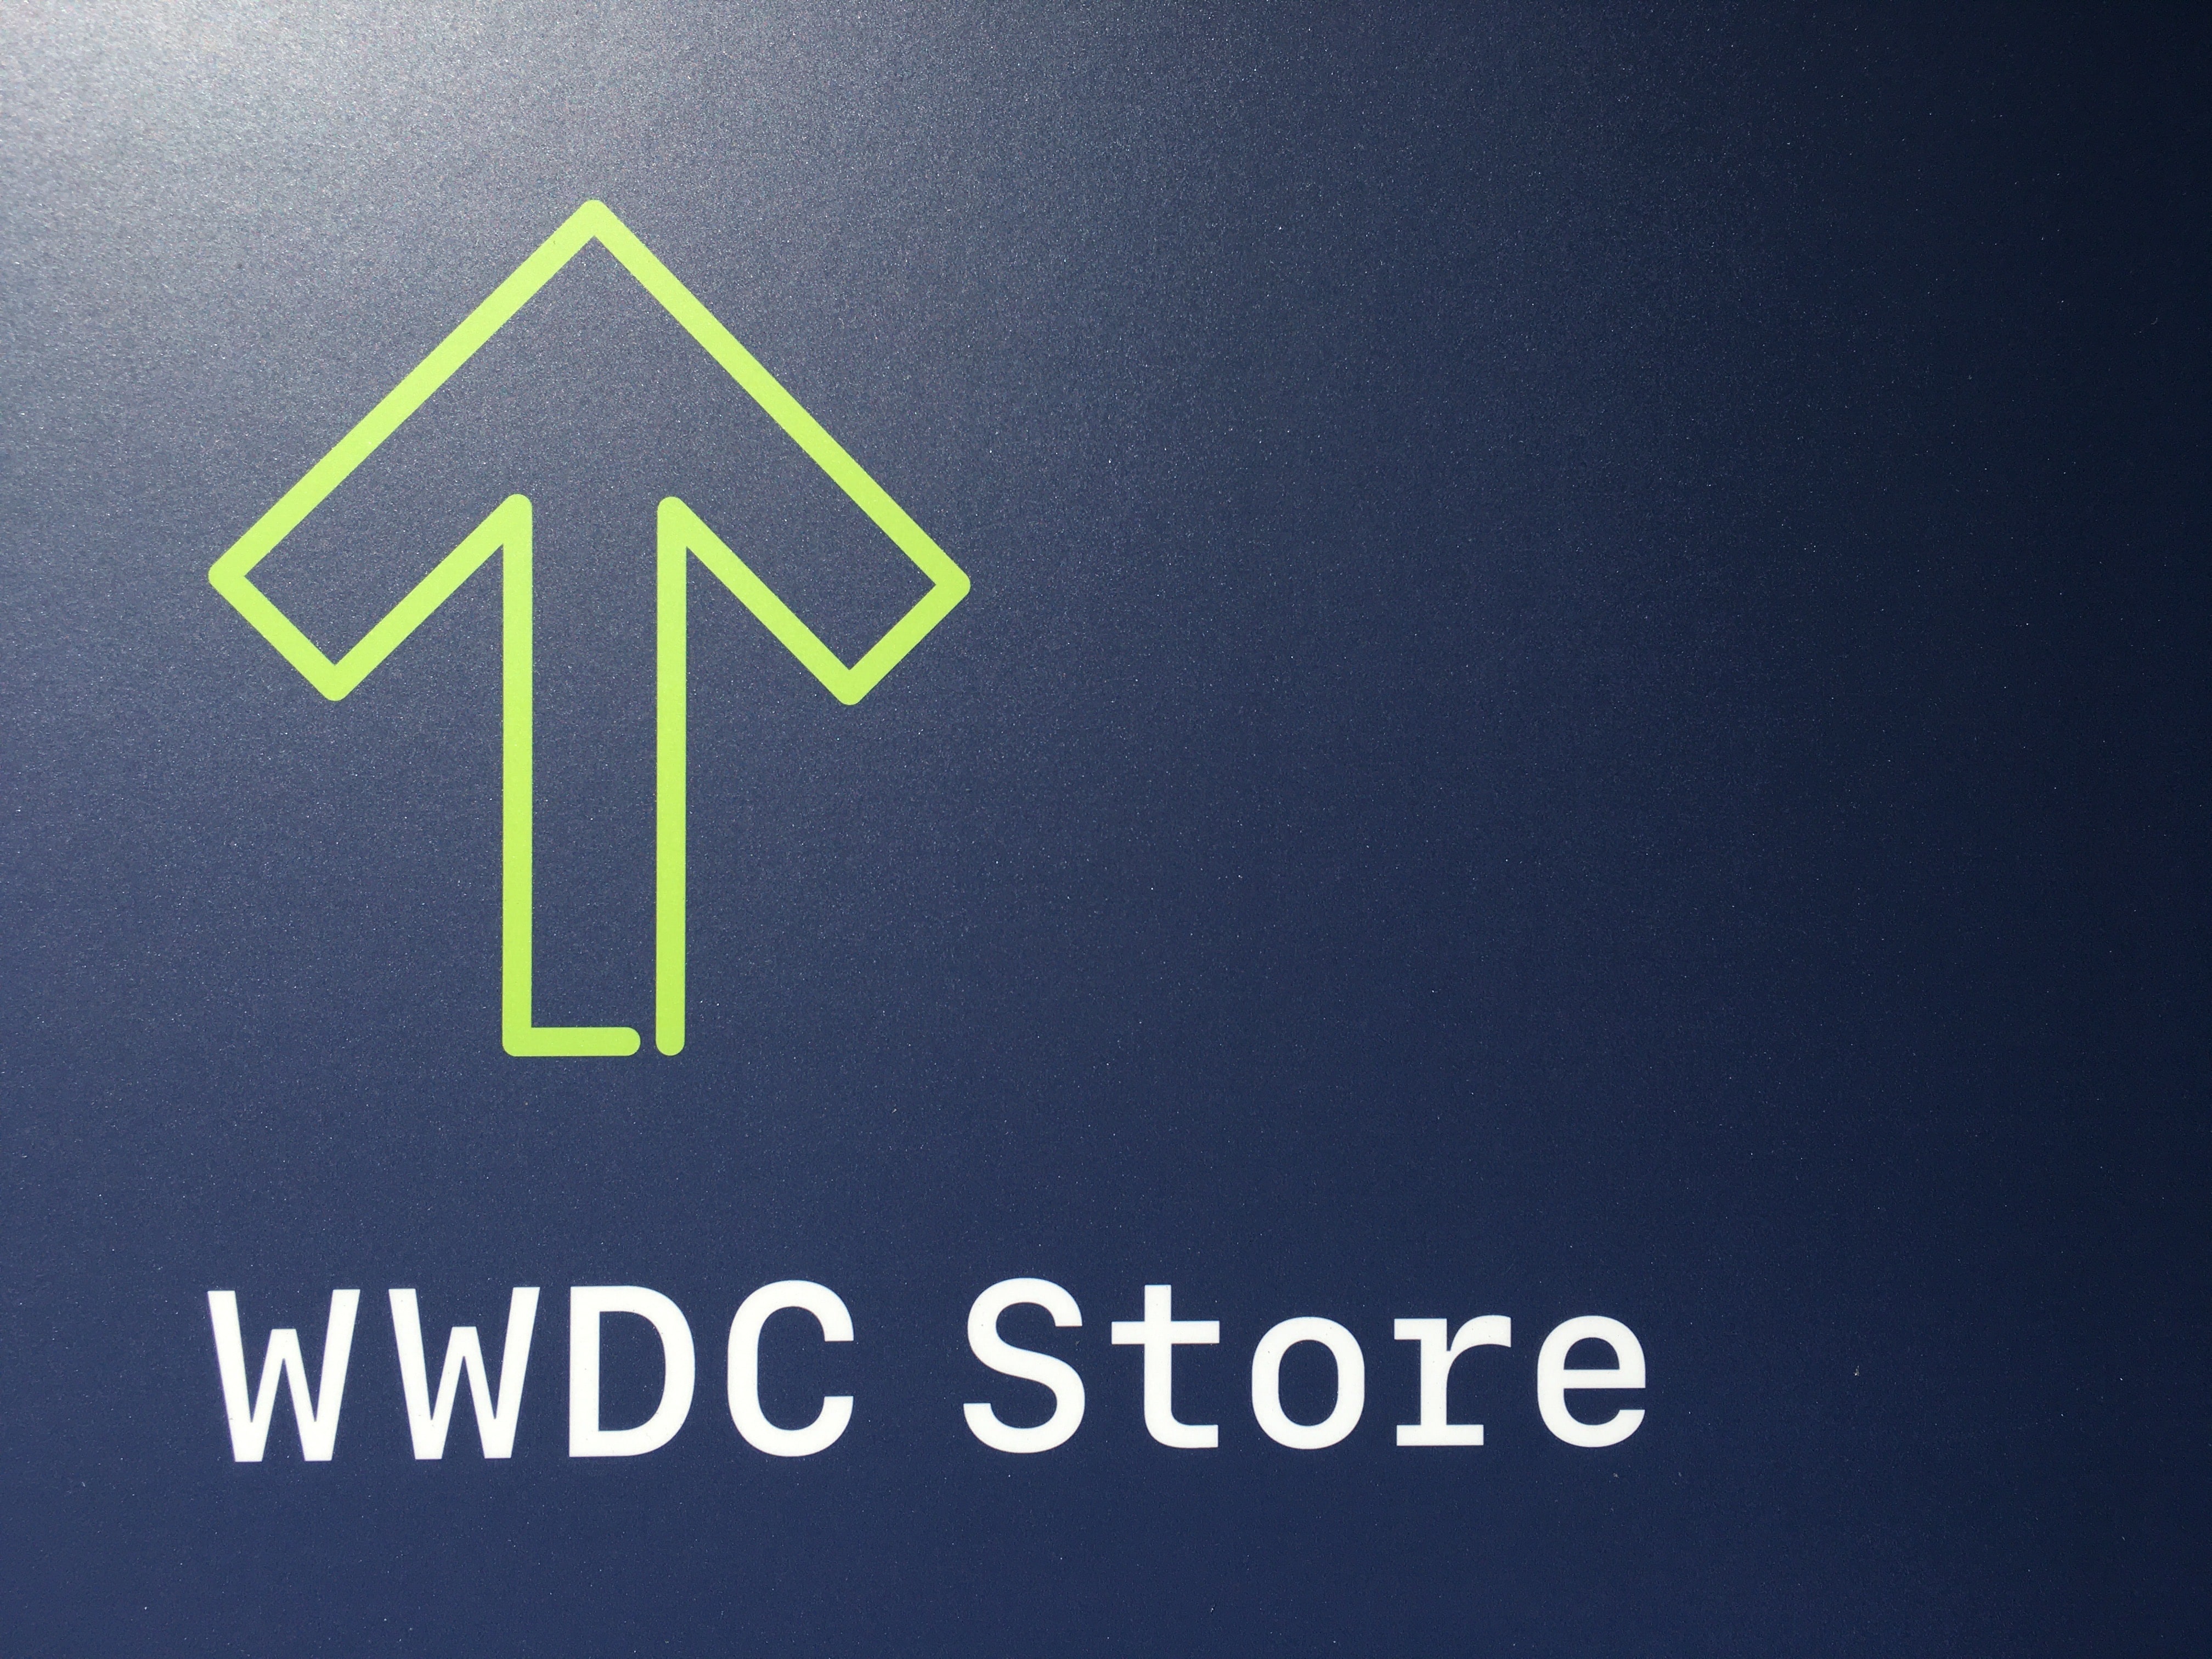 WWDC Store